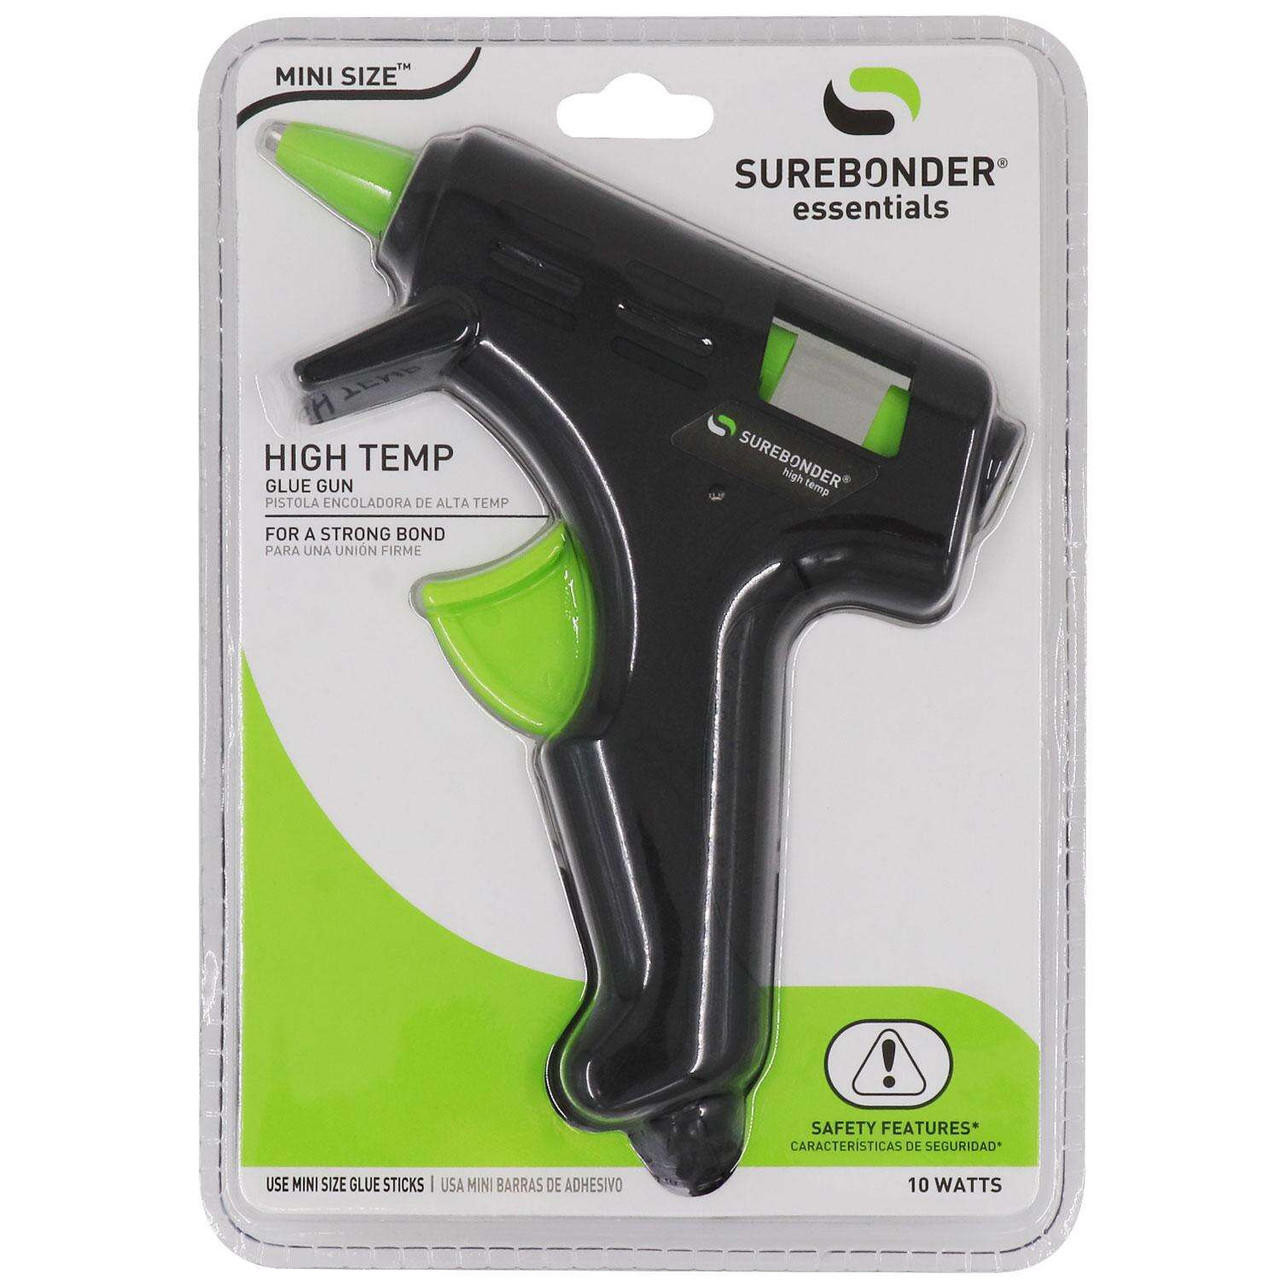 High Temp Mini Glue Guns